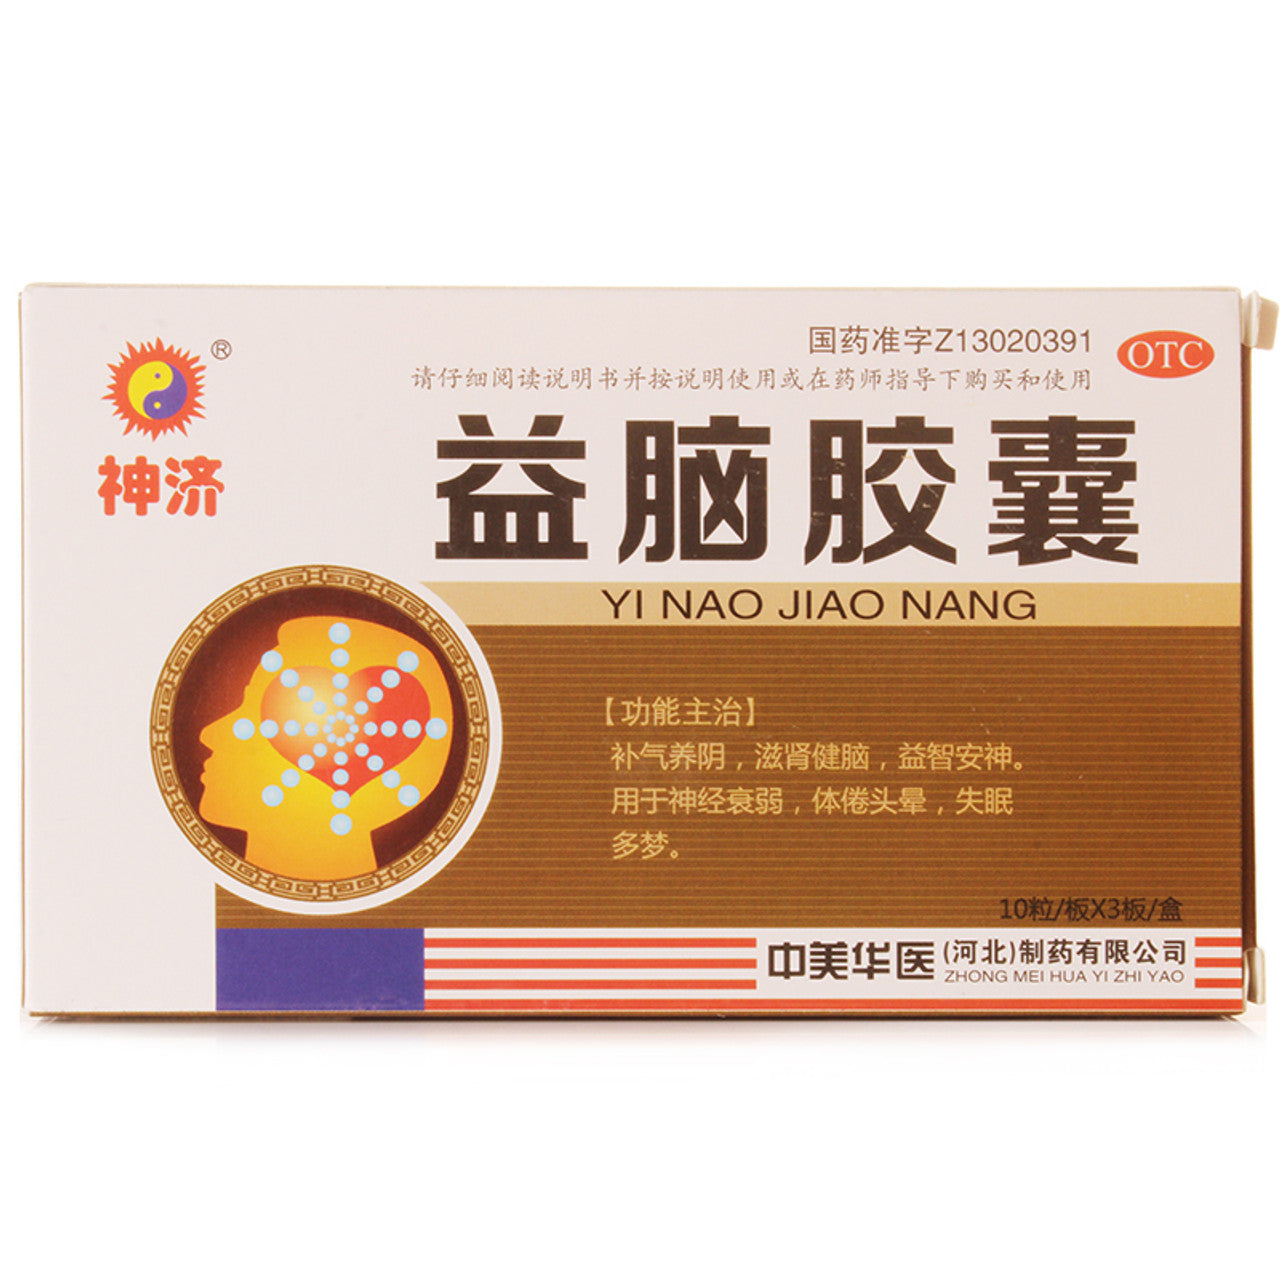 China Herb. Brand SHEN JI. Yinao Jiaonang or Yi Nao Jiao Nang or Yinao Capsules or Yi Nao Capsules for Neurasthenia (0.3g*30 Capsules*5 boxes)